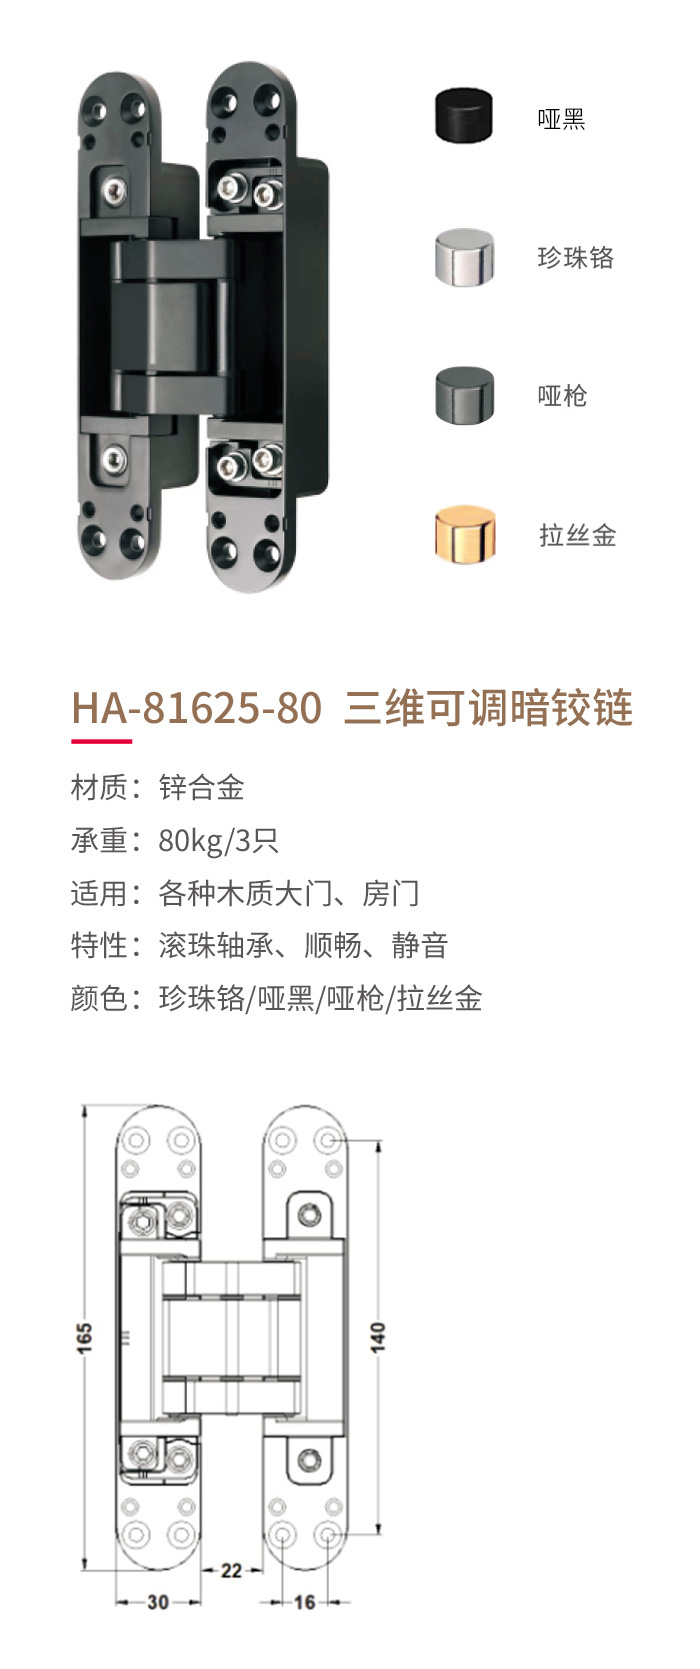 HA-81625-80三維可調暗鉸鏈-1.jpg